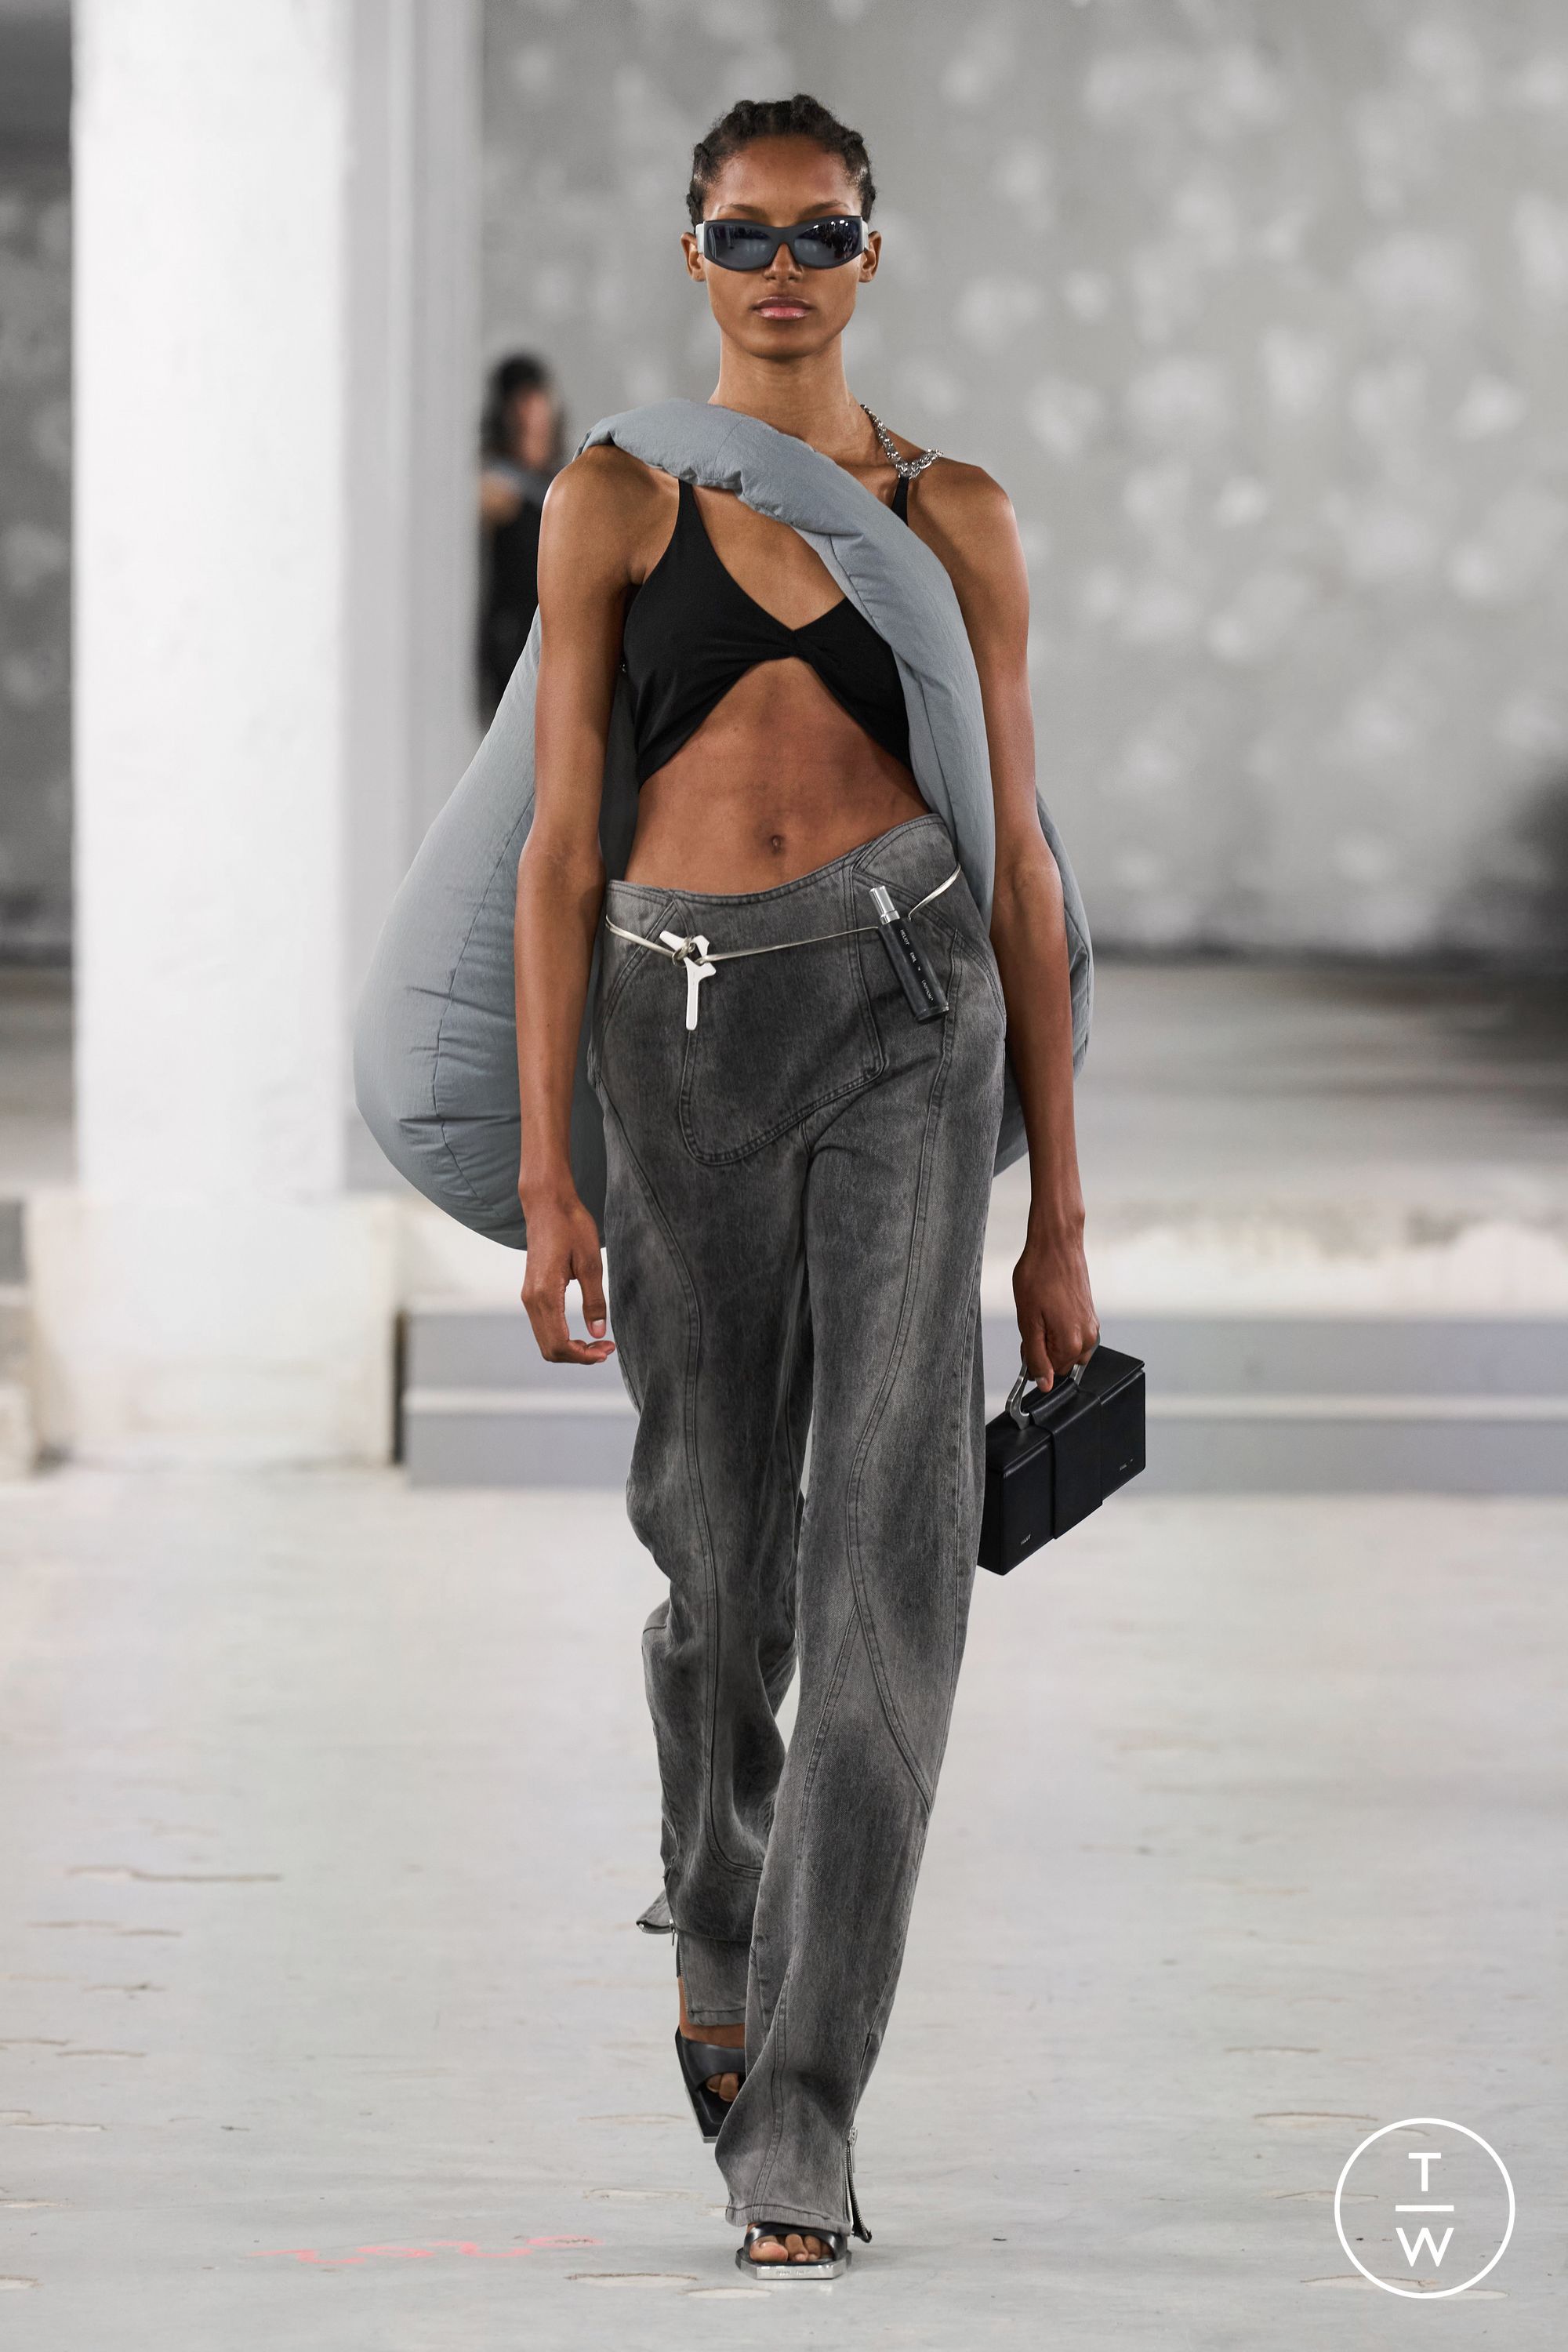 Philipp Plein SS23 womenswear #14 - Tagwalk: The Fashion Search Engine